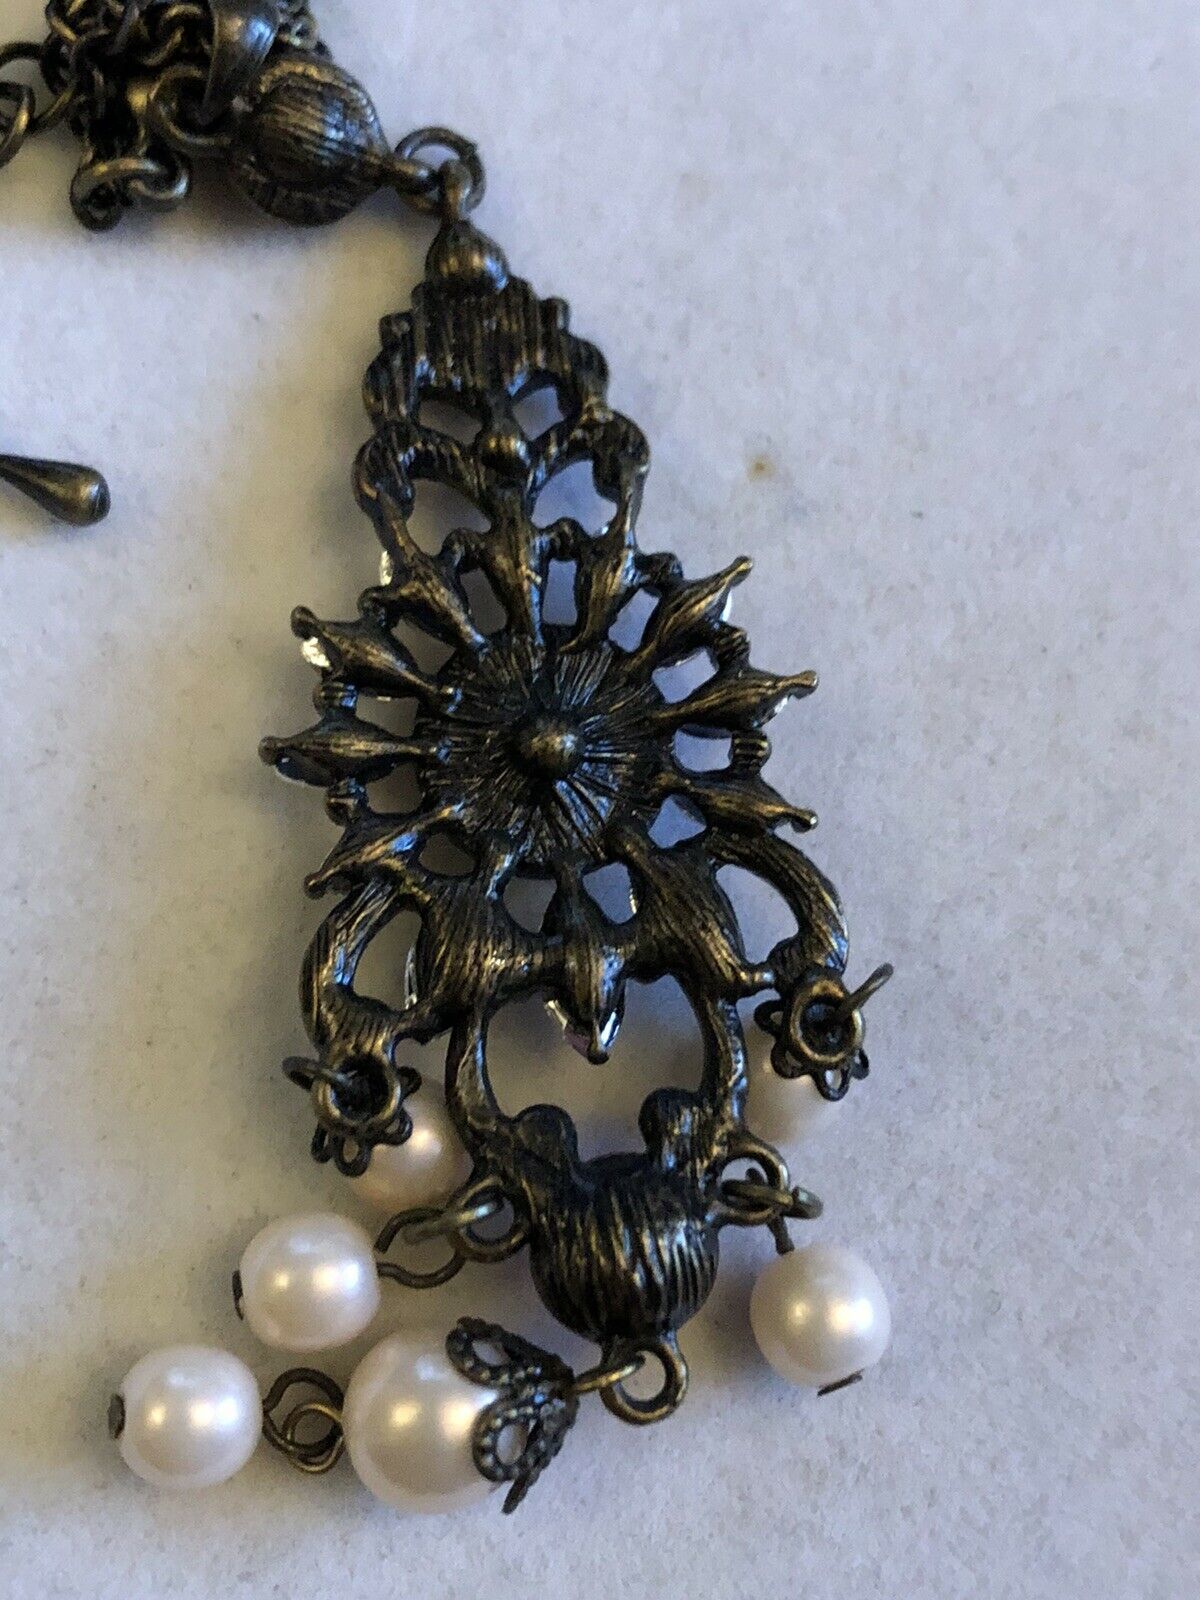 Vintage Drop Flowers Diamanté Faux Pearl Necklace